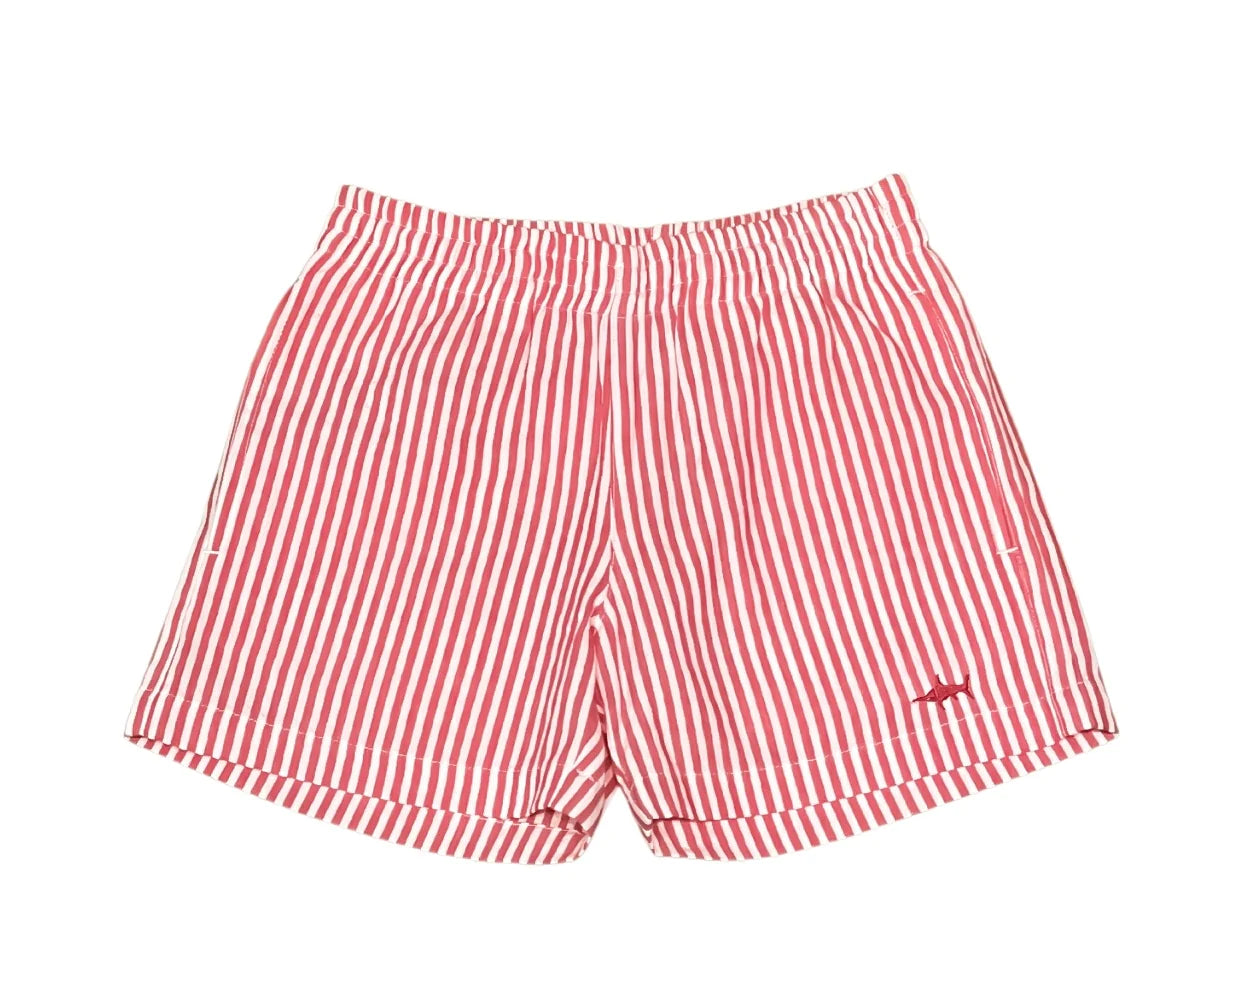 Naples Shorts in Red Seersucker